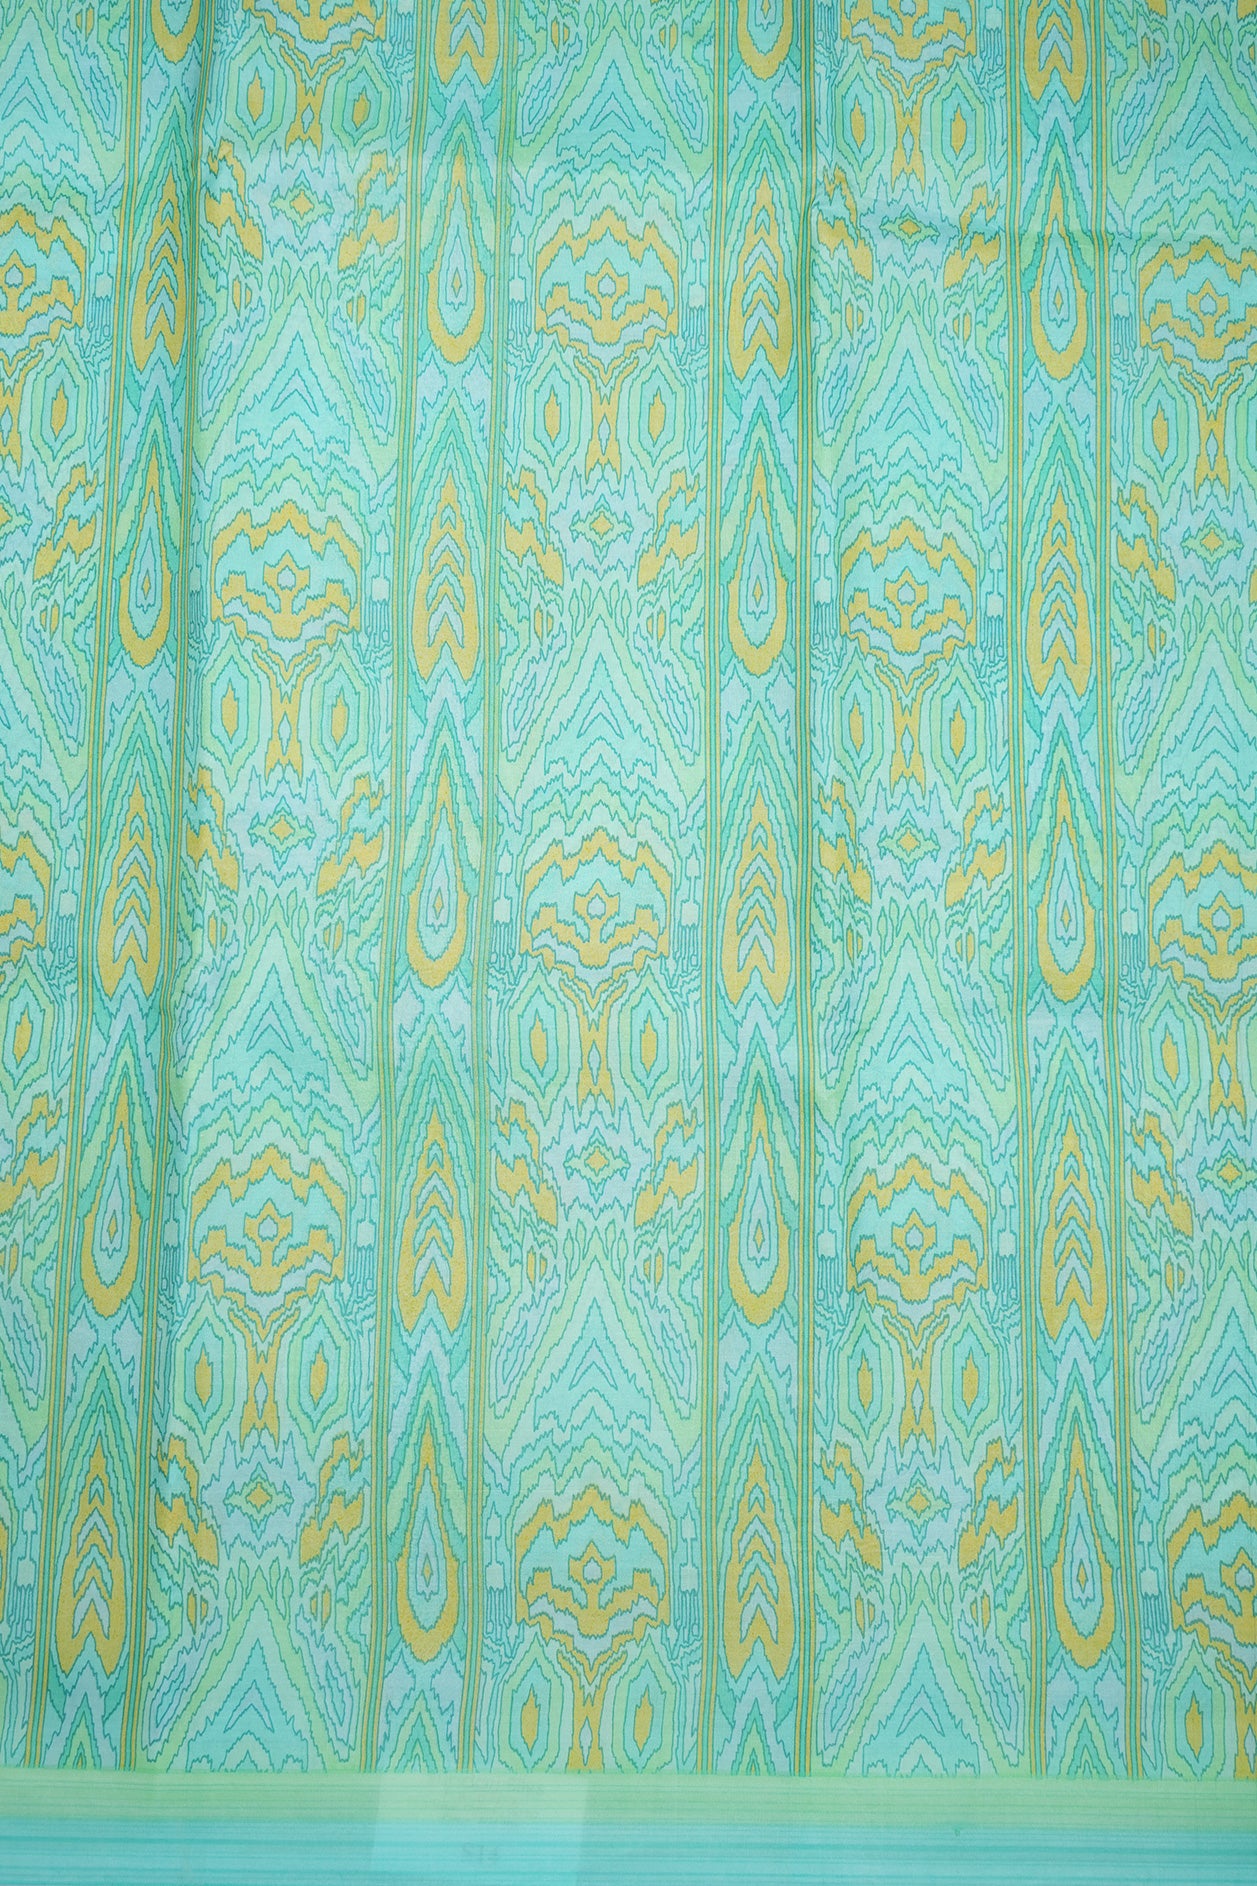 Allover Design Multicolor Printed Silk Saree